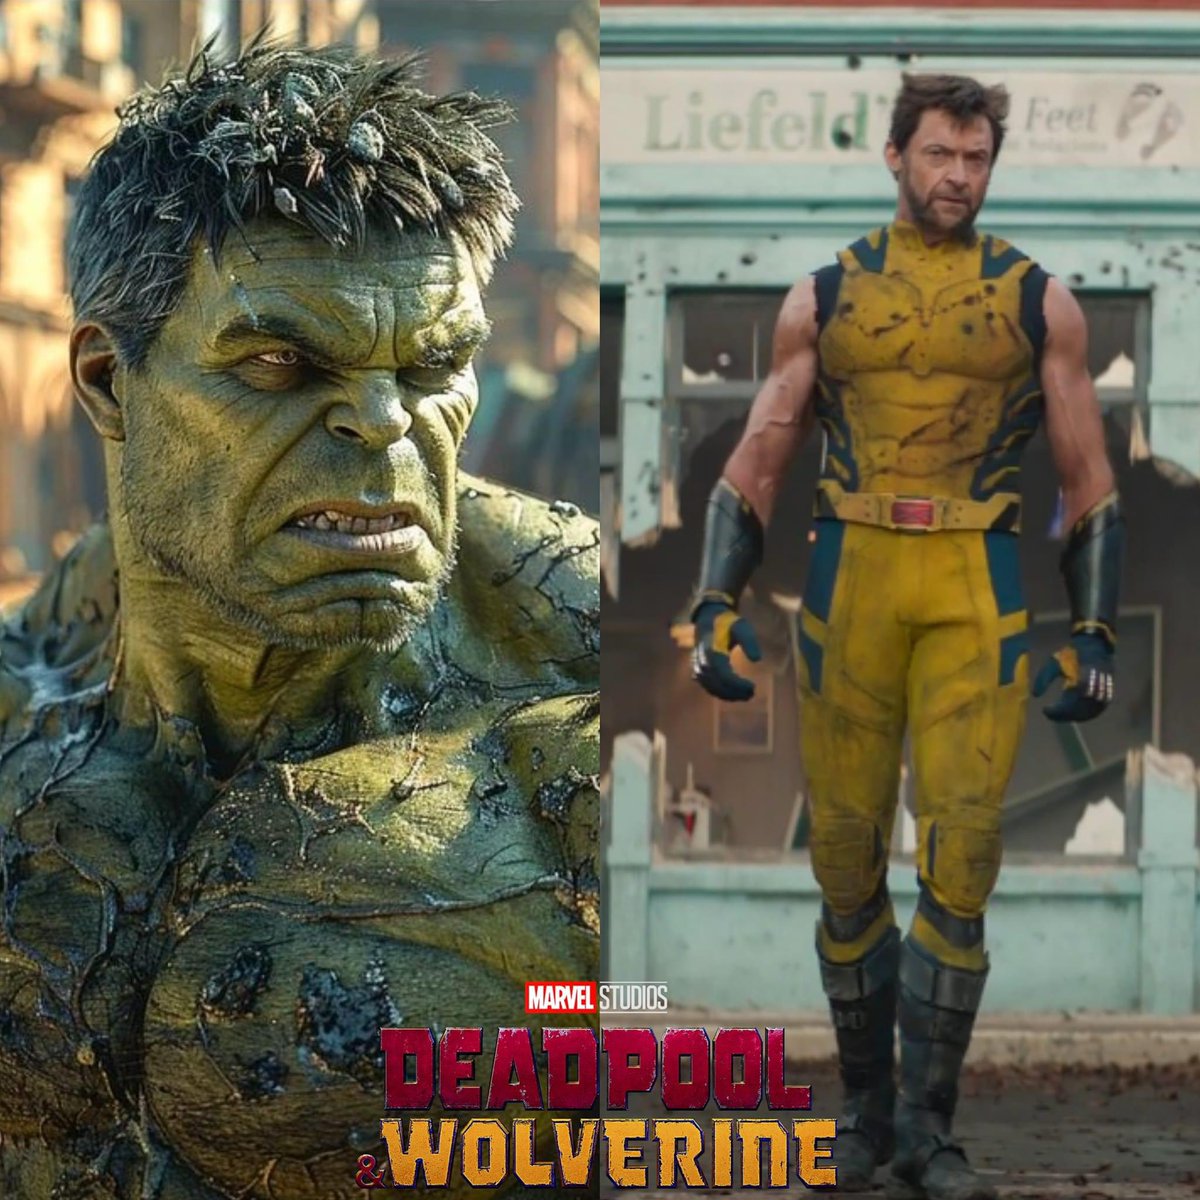 -HULK VS WOLVERINE-

Todo parece indicar que en #deadpoolandwolverine veremos una batalla breve entre el Hulk de #EdwardNorton & el Wolverine de #HughJackman 

-Se ha revelado que Hulk será el motivo por el que Wolverine se quite sus mangas para luchar mejor